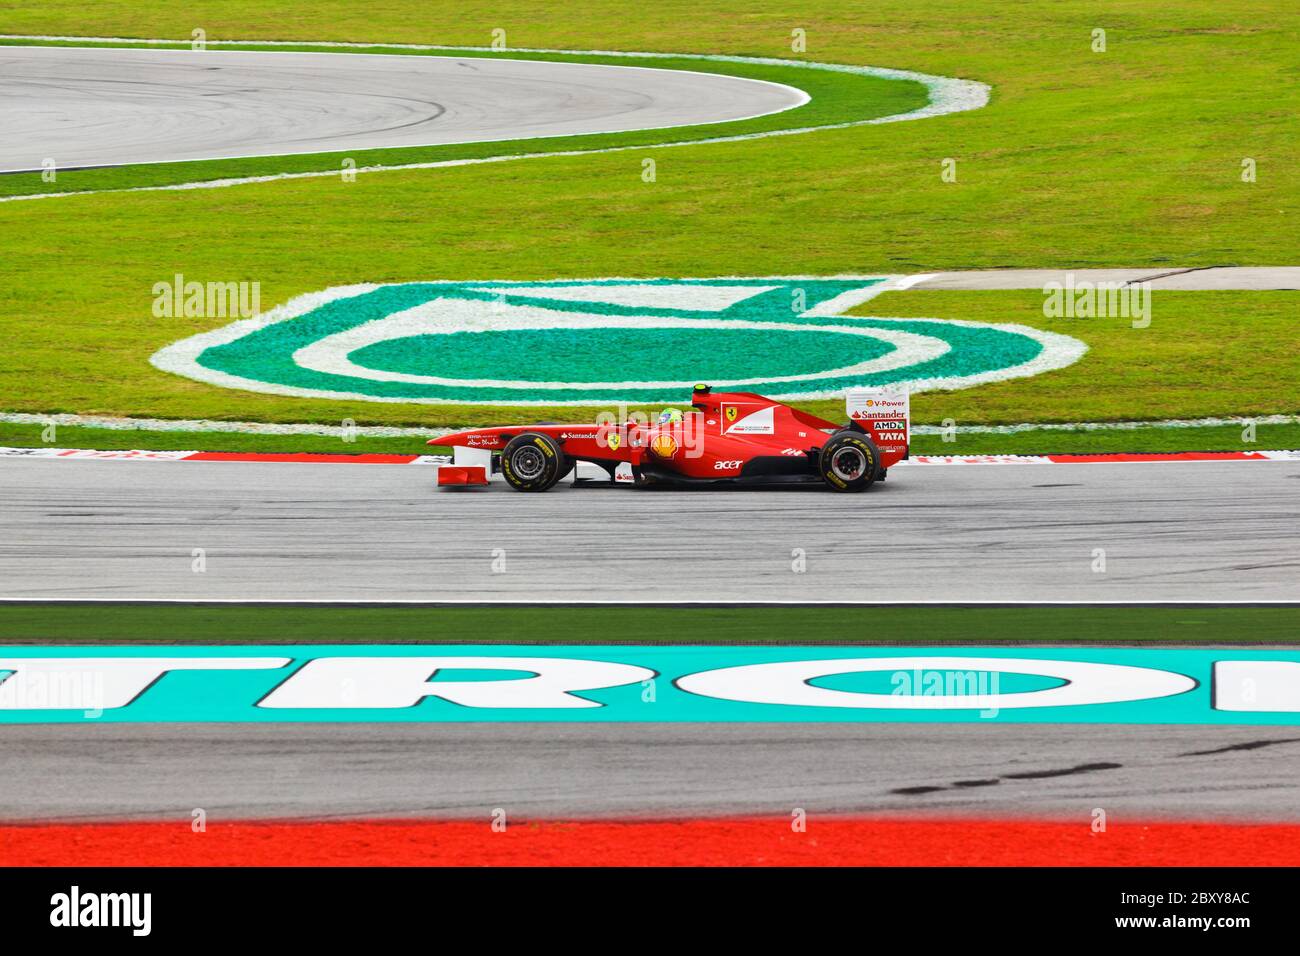 SEPANG, MALESIA - 9 APRILE: Felipe massa (team Scuderia Ferrari) alle qualifiche sul GP di Formula 1, 9 aprile 2011, Sepang, Malesia Foto Stock